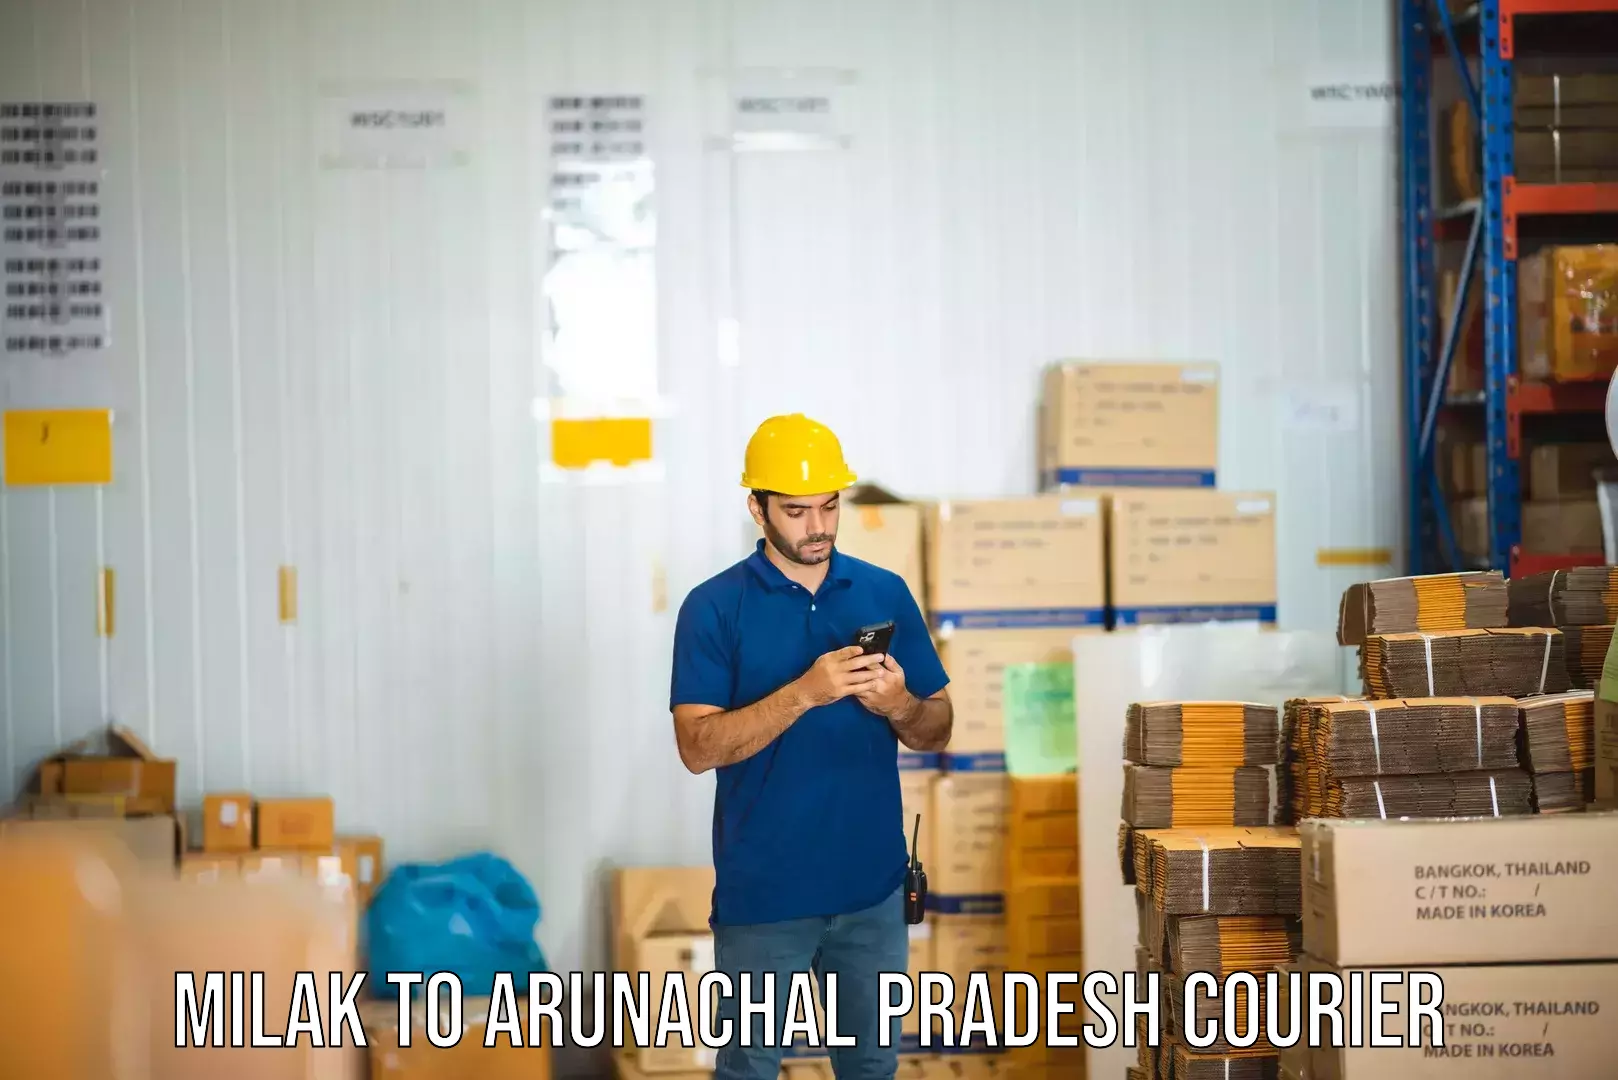 Specialized shipment handling in Milak to Arunachal Pradesh